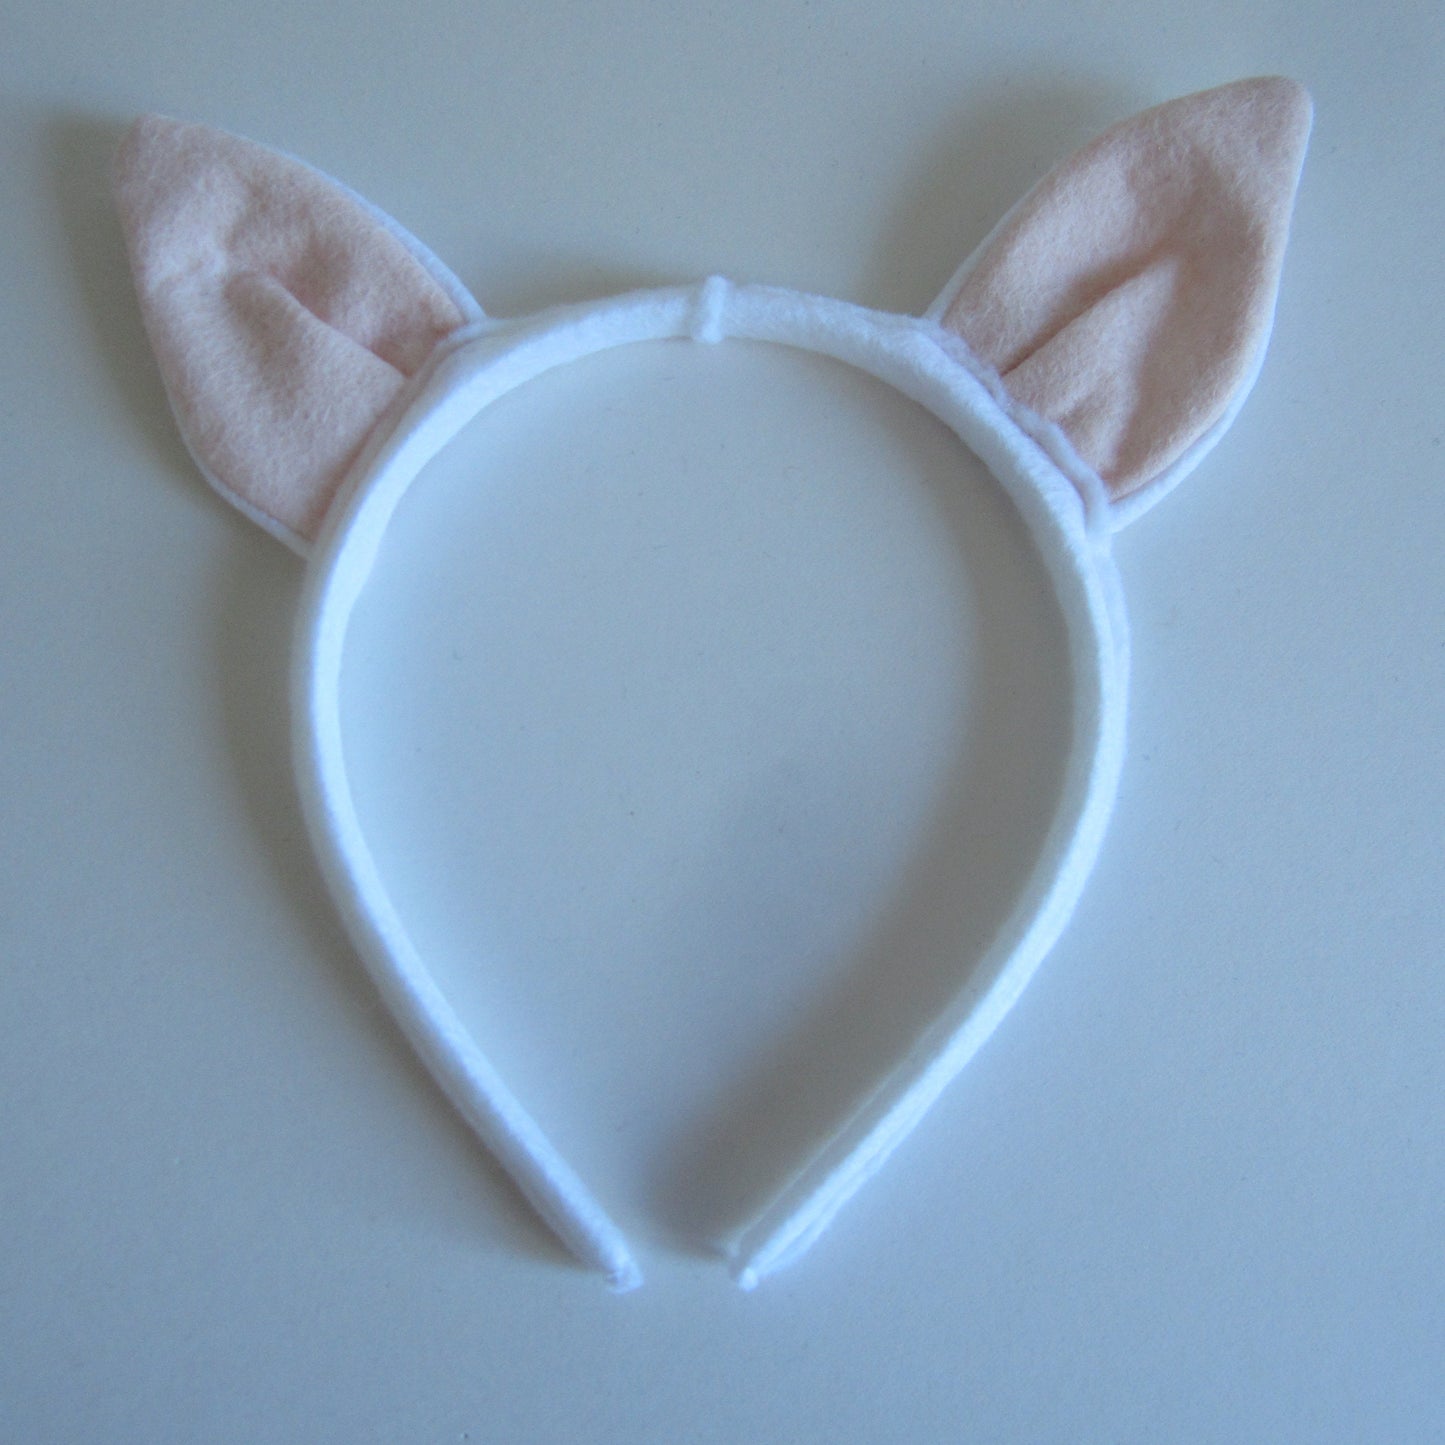 Cat Ears Hairband Made of White Felt